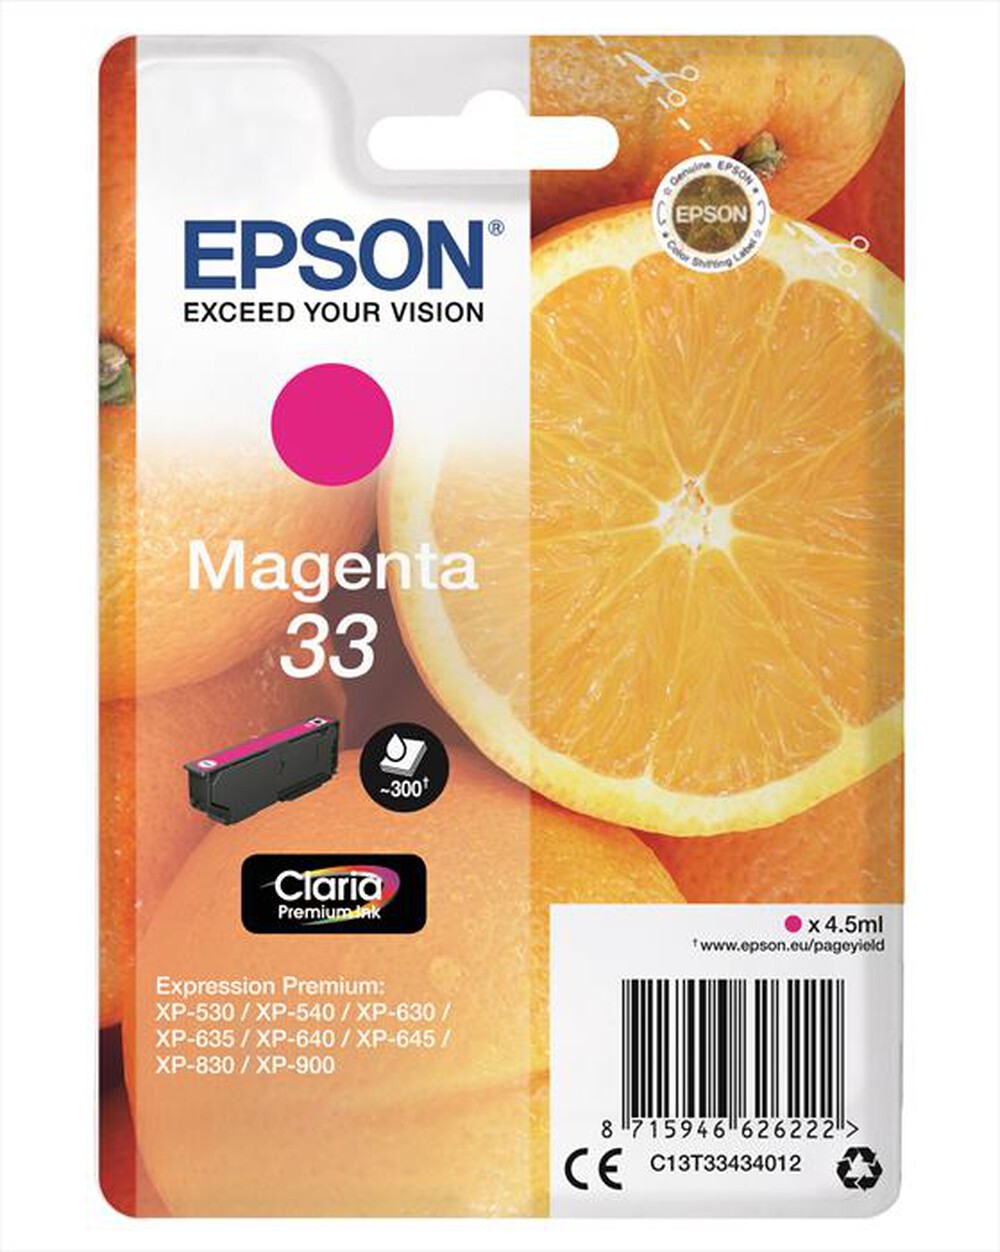 "EPSON - C13T33434022 - Magenta"